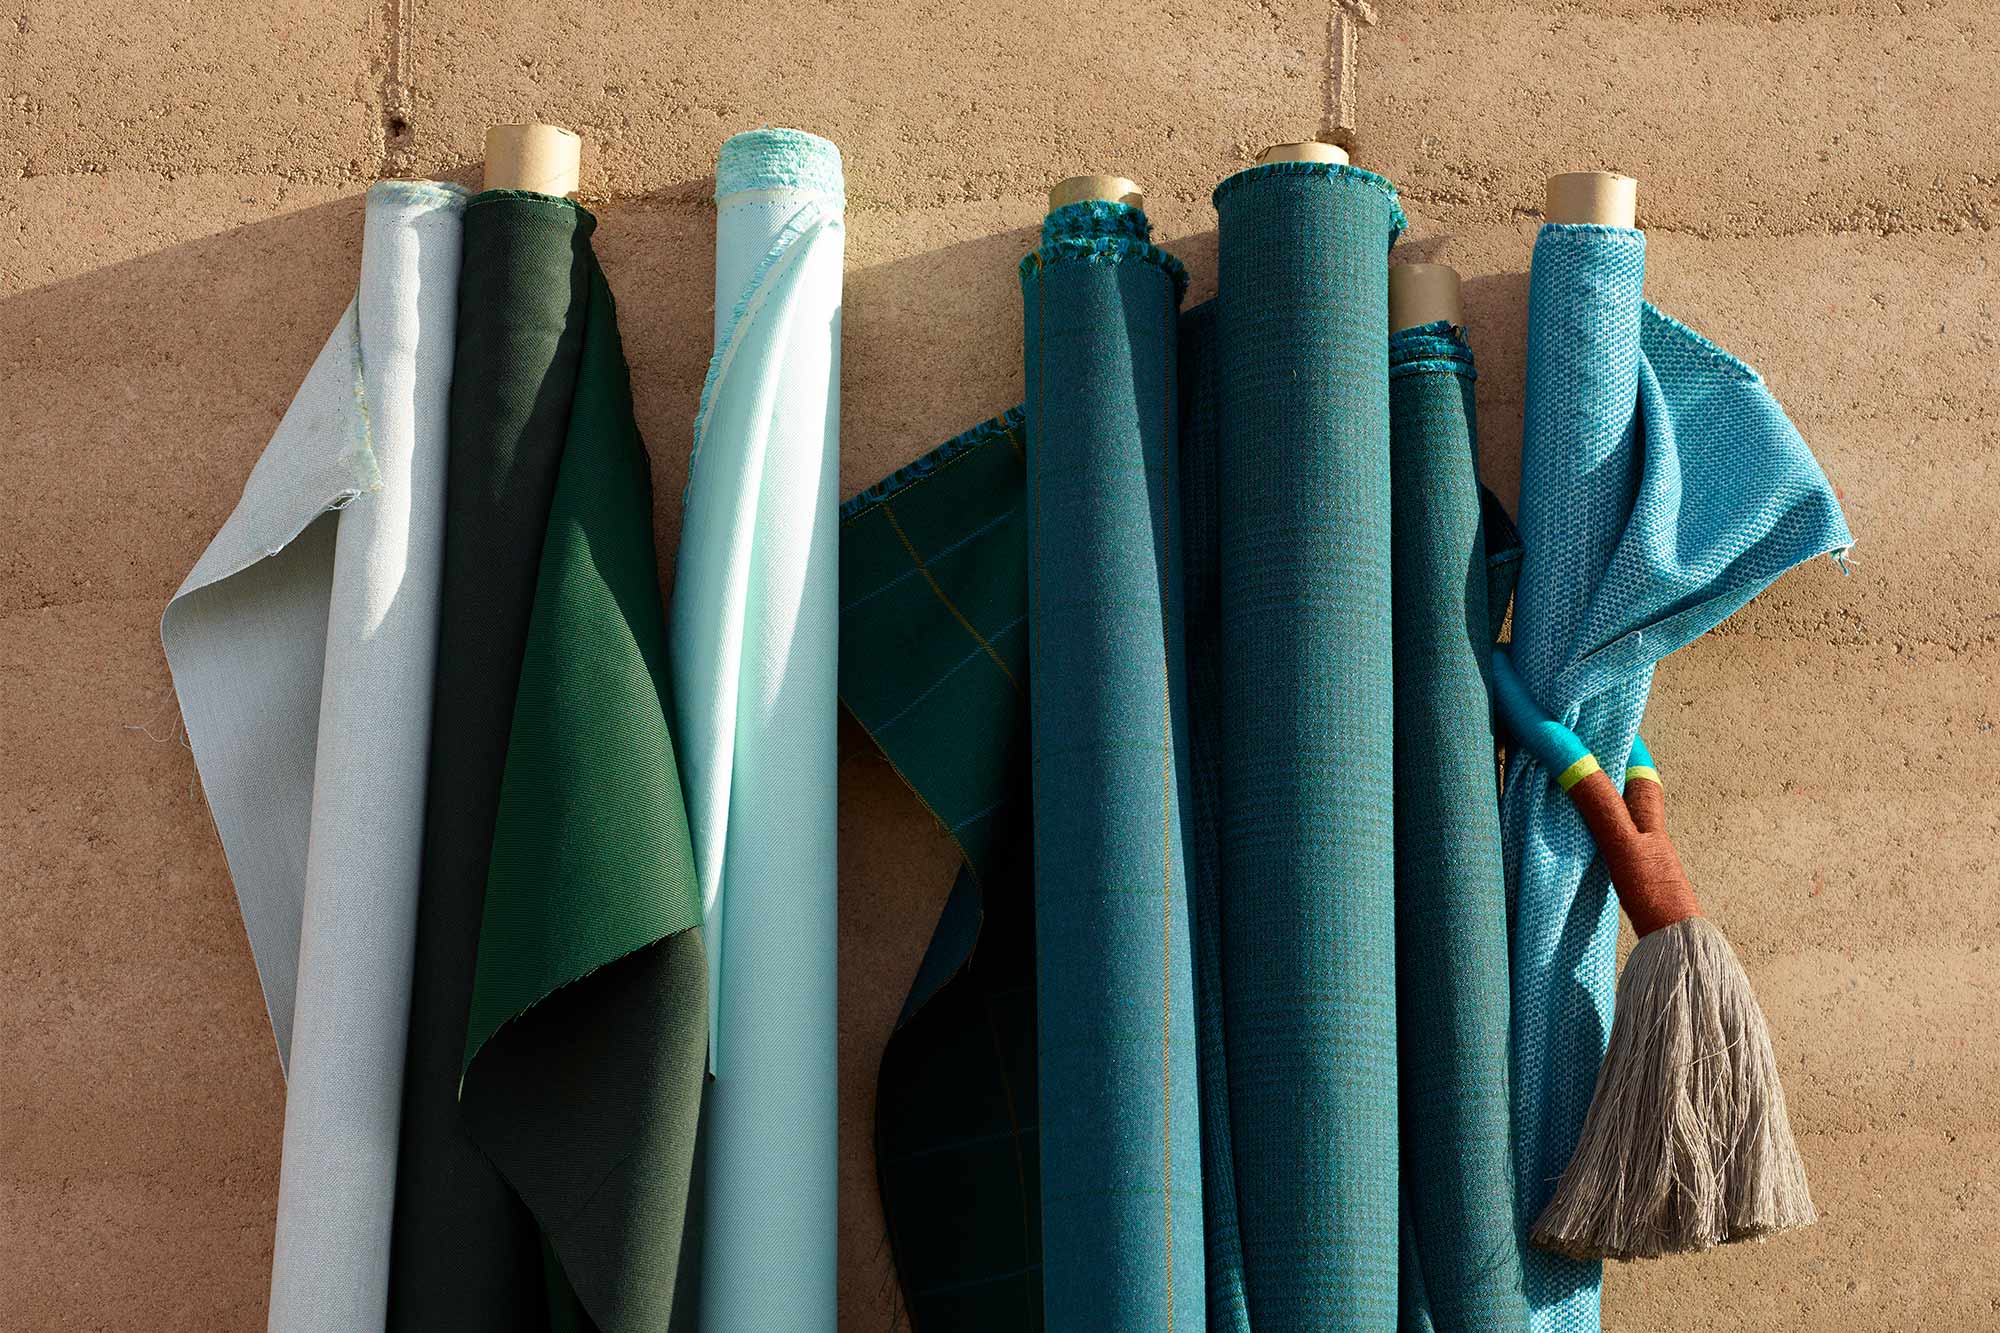 Rollos de telas Sunbrella para tapicería de color verde azulado contra una pared en el exterior